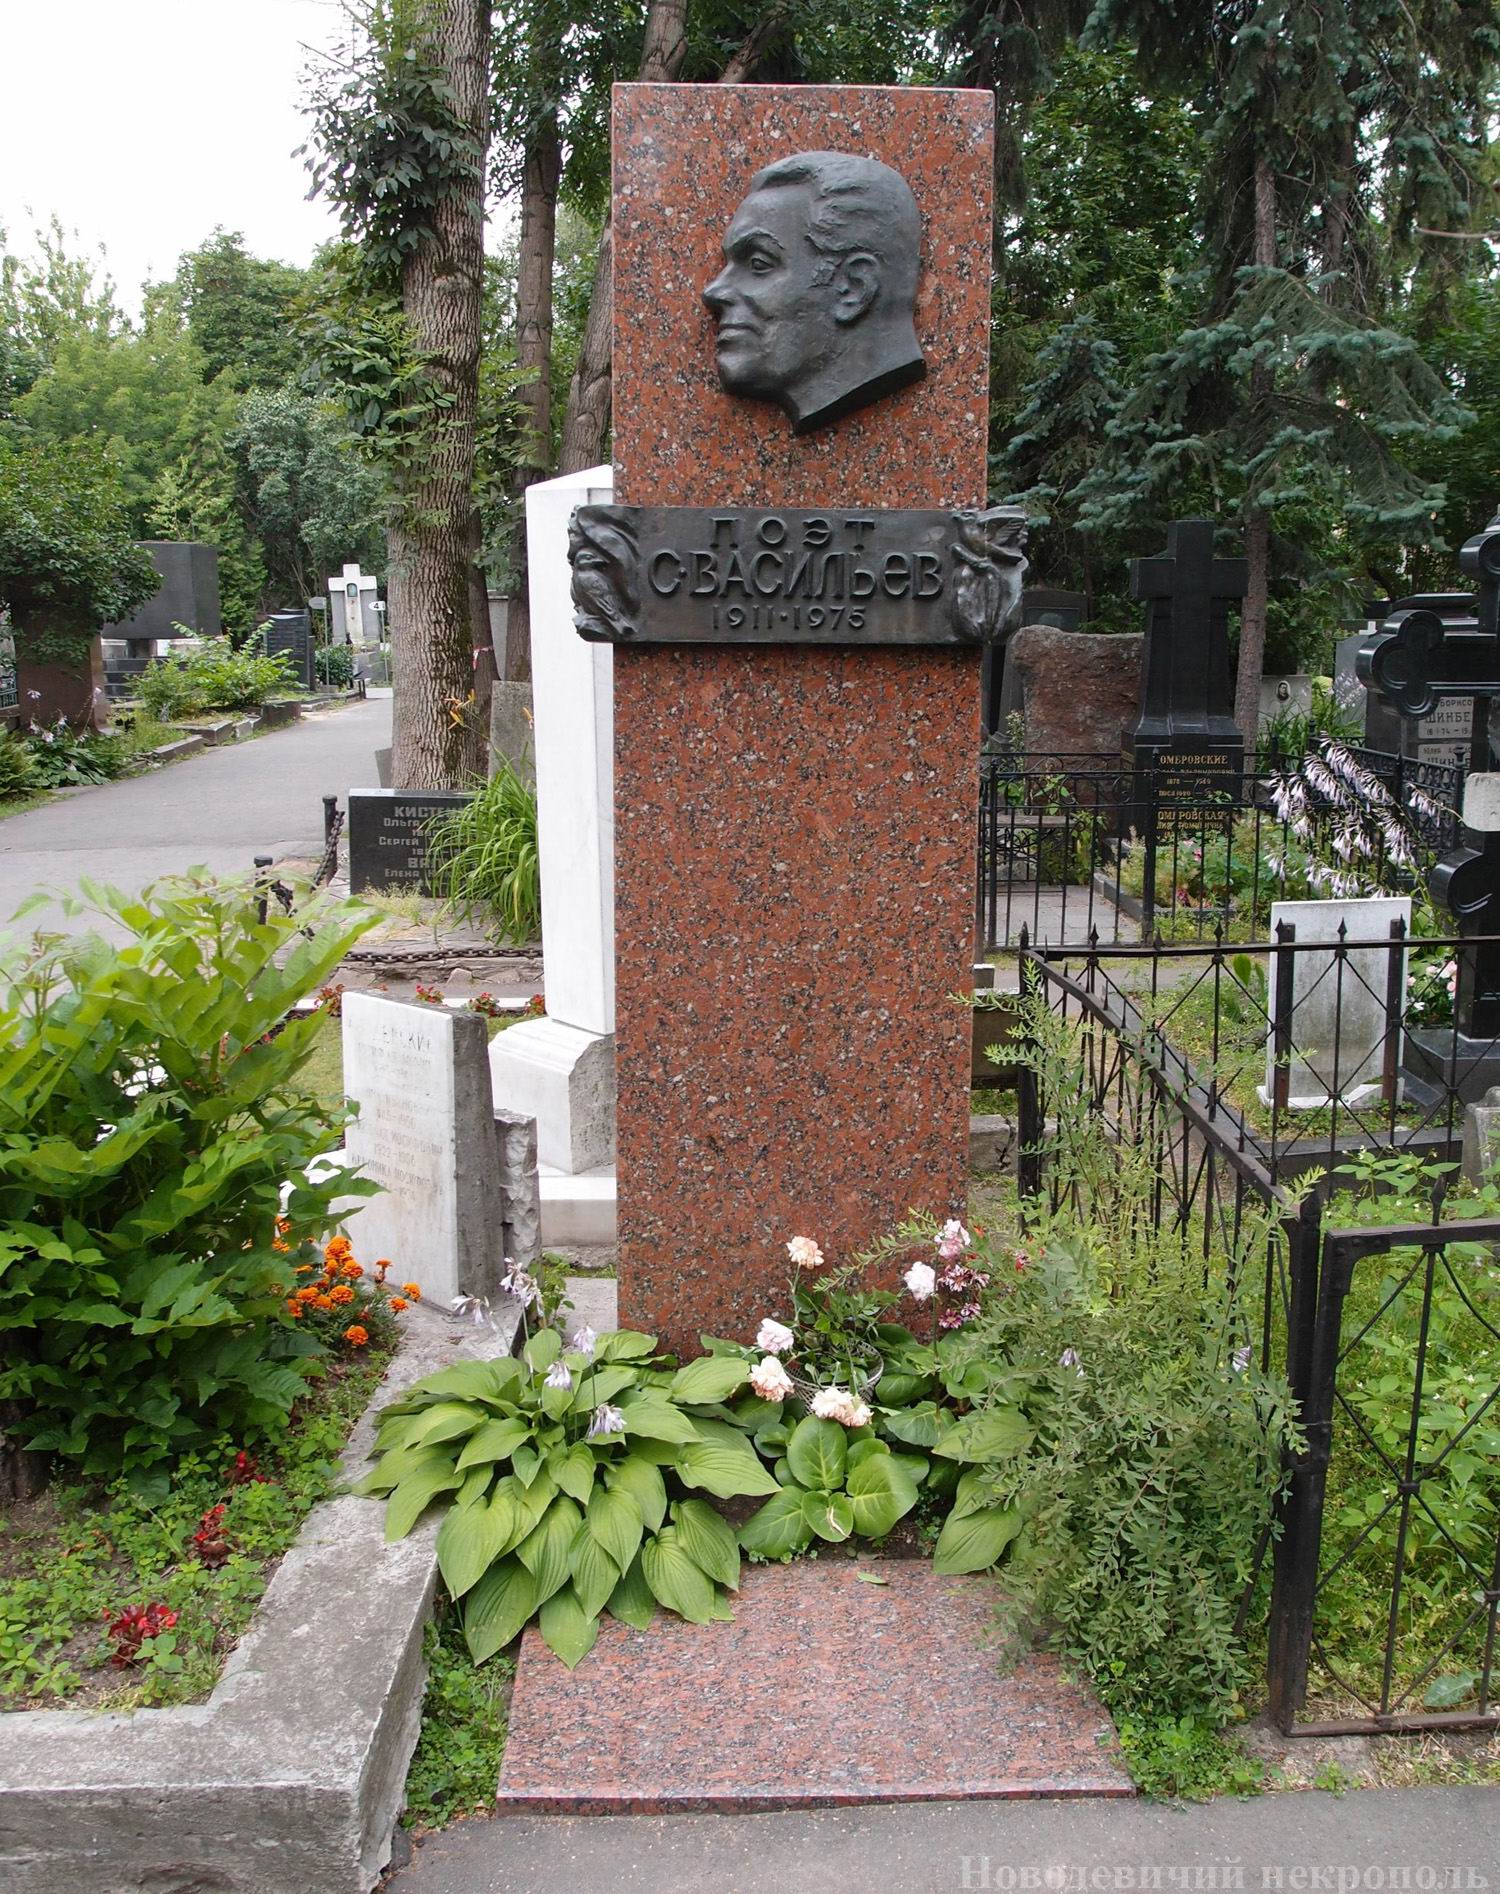 Памятник на могиле Васильева С.А. (1911-1975), ск. В.Шелов, арх. В.Обросов-Серов, на Новодевичьем кладбище (1-12-2).